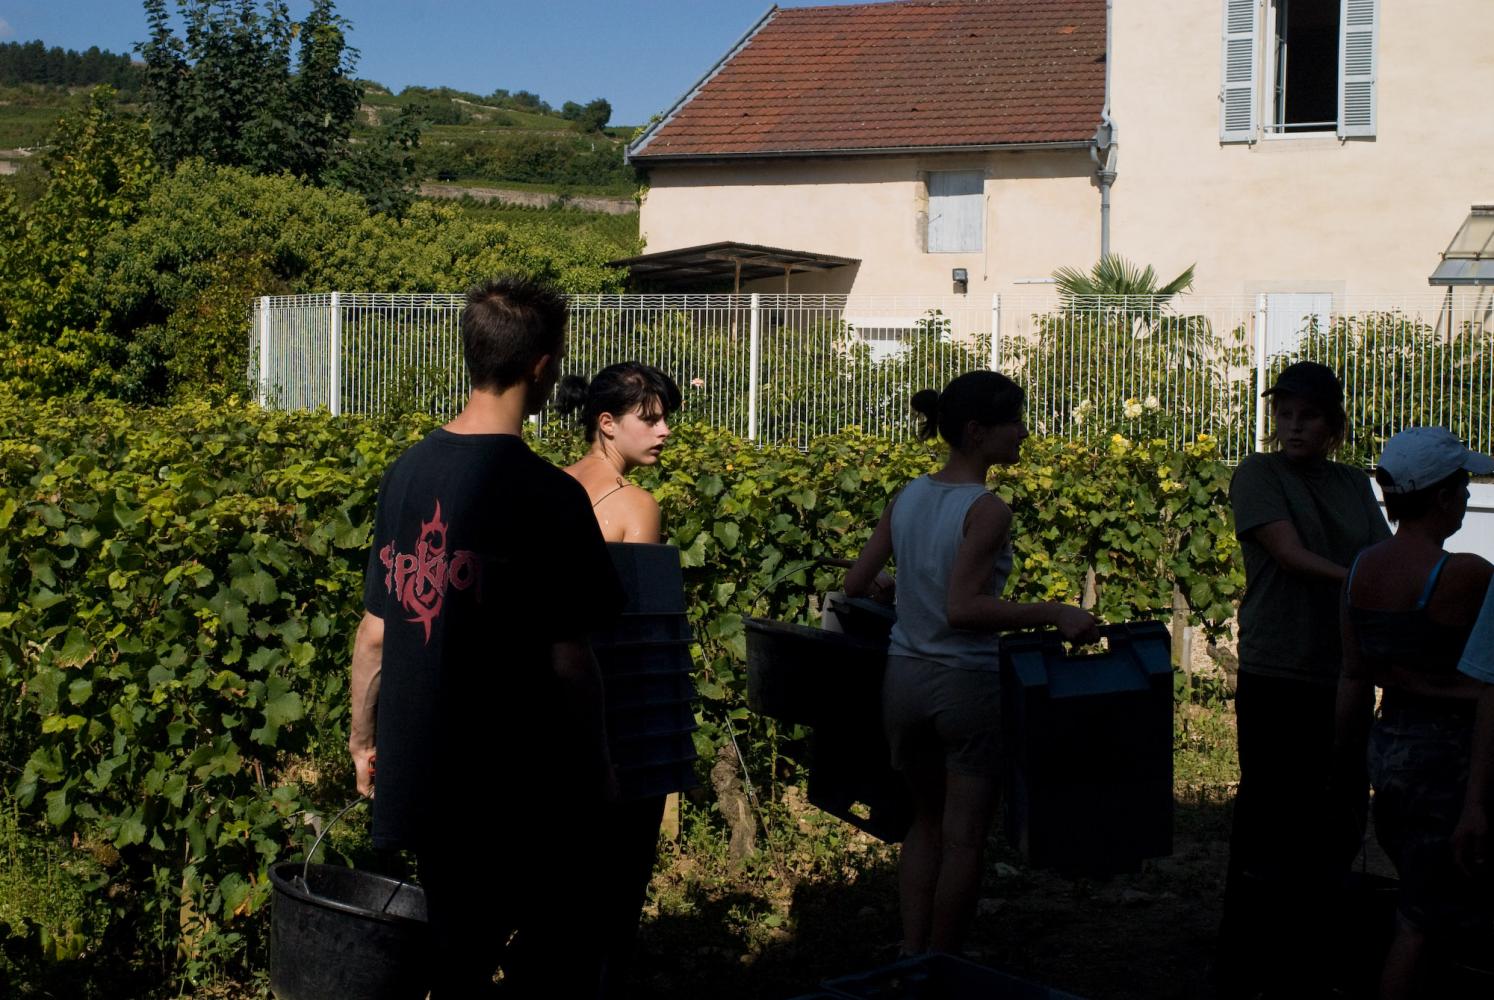 Des vendangeurs passent à l'ombre d'une maison en sortant du clos, une parcelle fermée. En plus de leurs seaux, ils portent des caisses de plastique. Pommard, Bourgogne, septembre 2009.